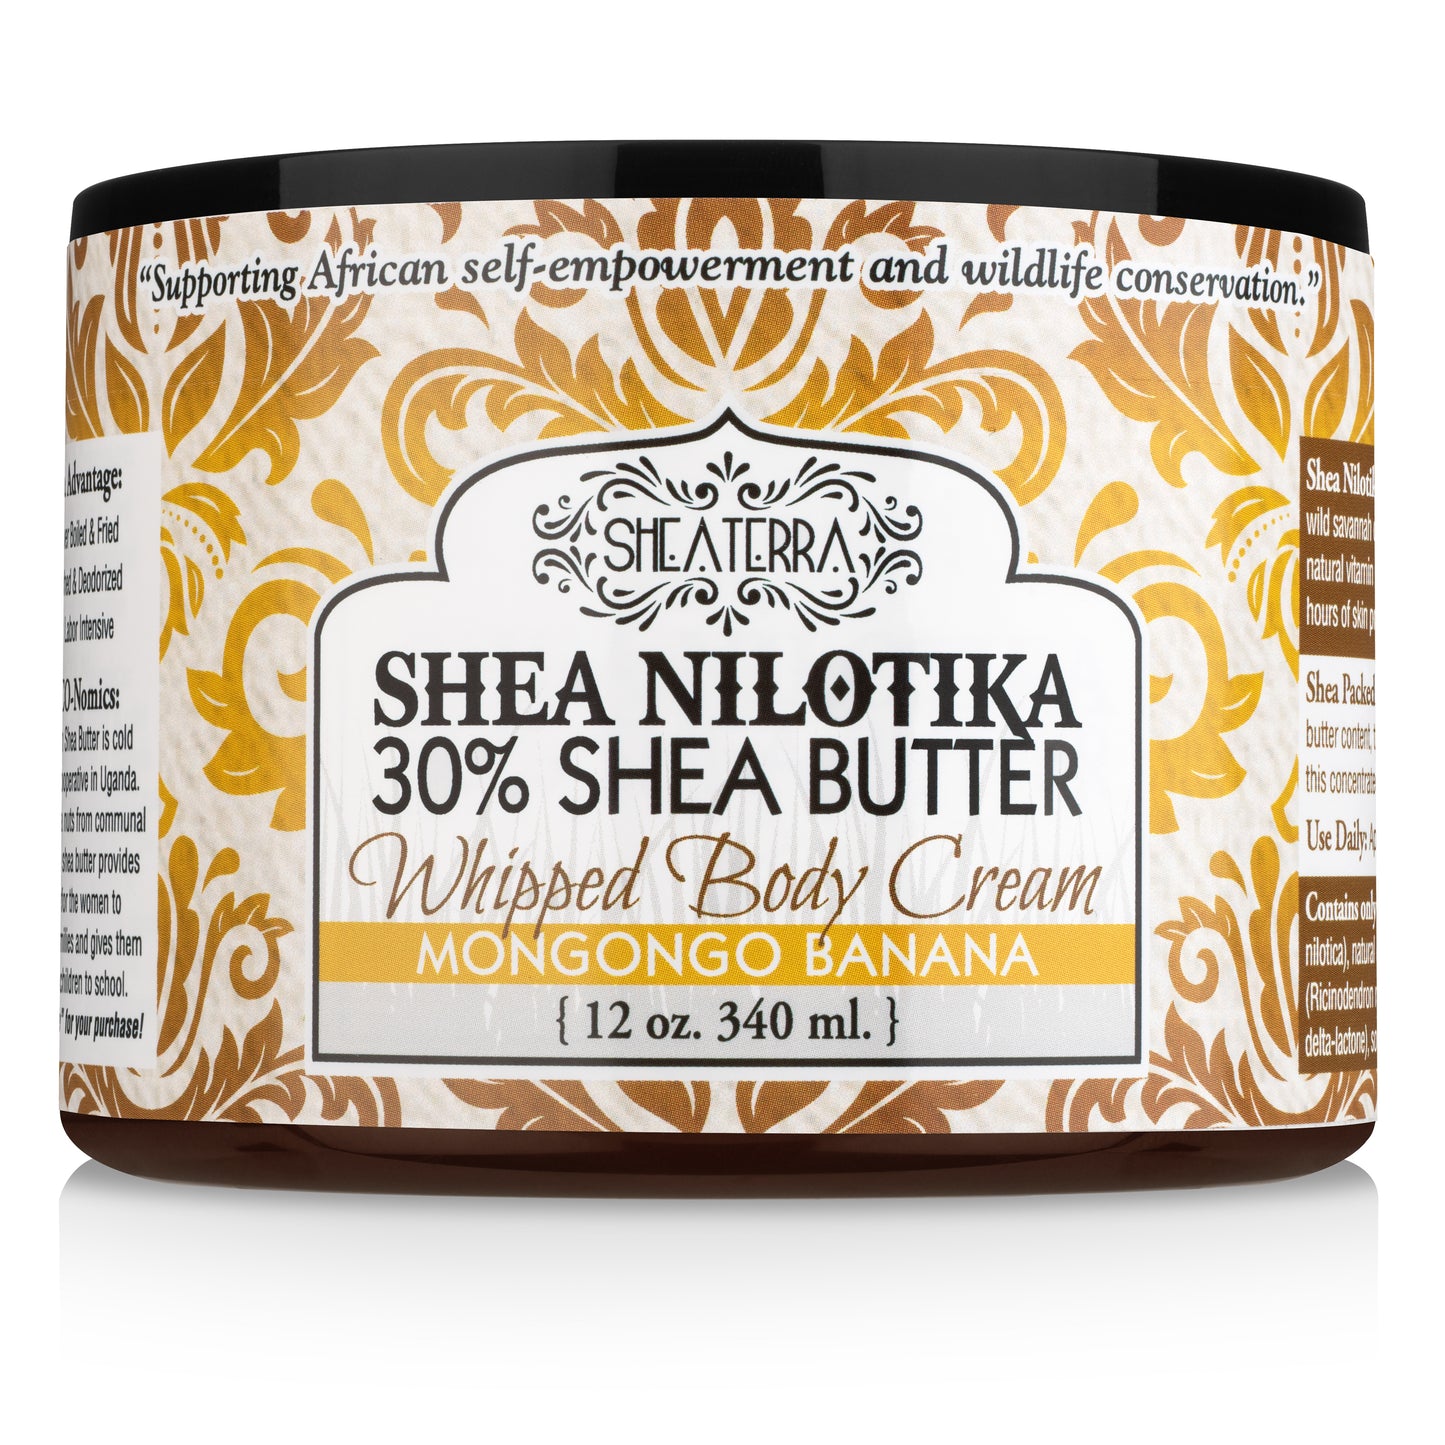 Shea Nilotik' 30% Shea Butter Whipped Body Cream MONGONGO BANANA